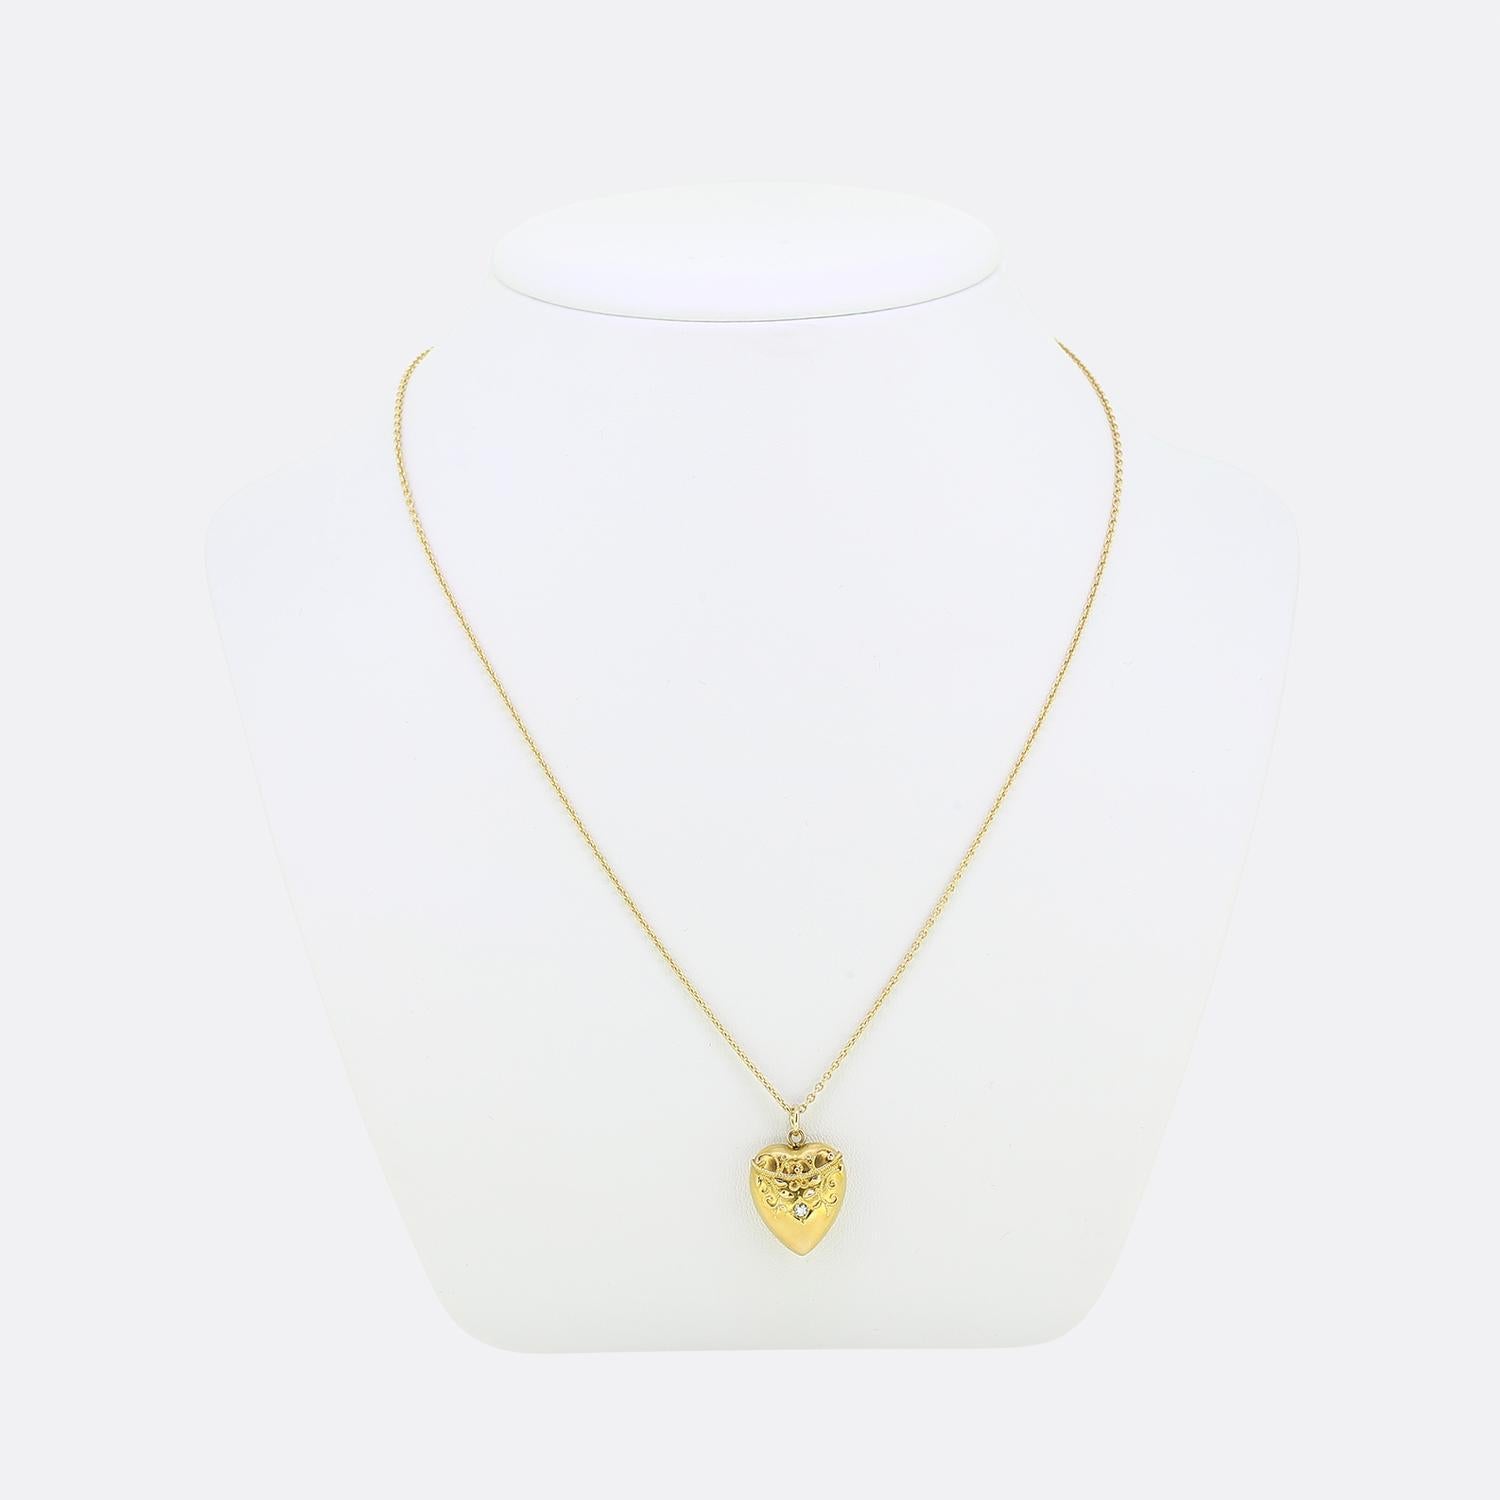 Nous avons ici un magnifique collier à pendentifs en diamants. Ce pendentif antique a été réalisé en or jaune 18 ct en forme de petit cœur d'amour et serti d'un diamant rond à facettes de taille ancienne. Cette pierre focale est ensuite surmontée